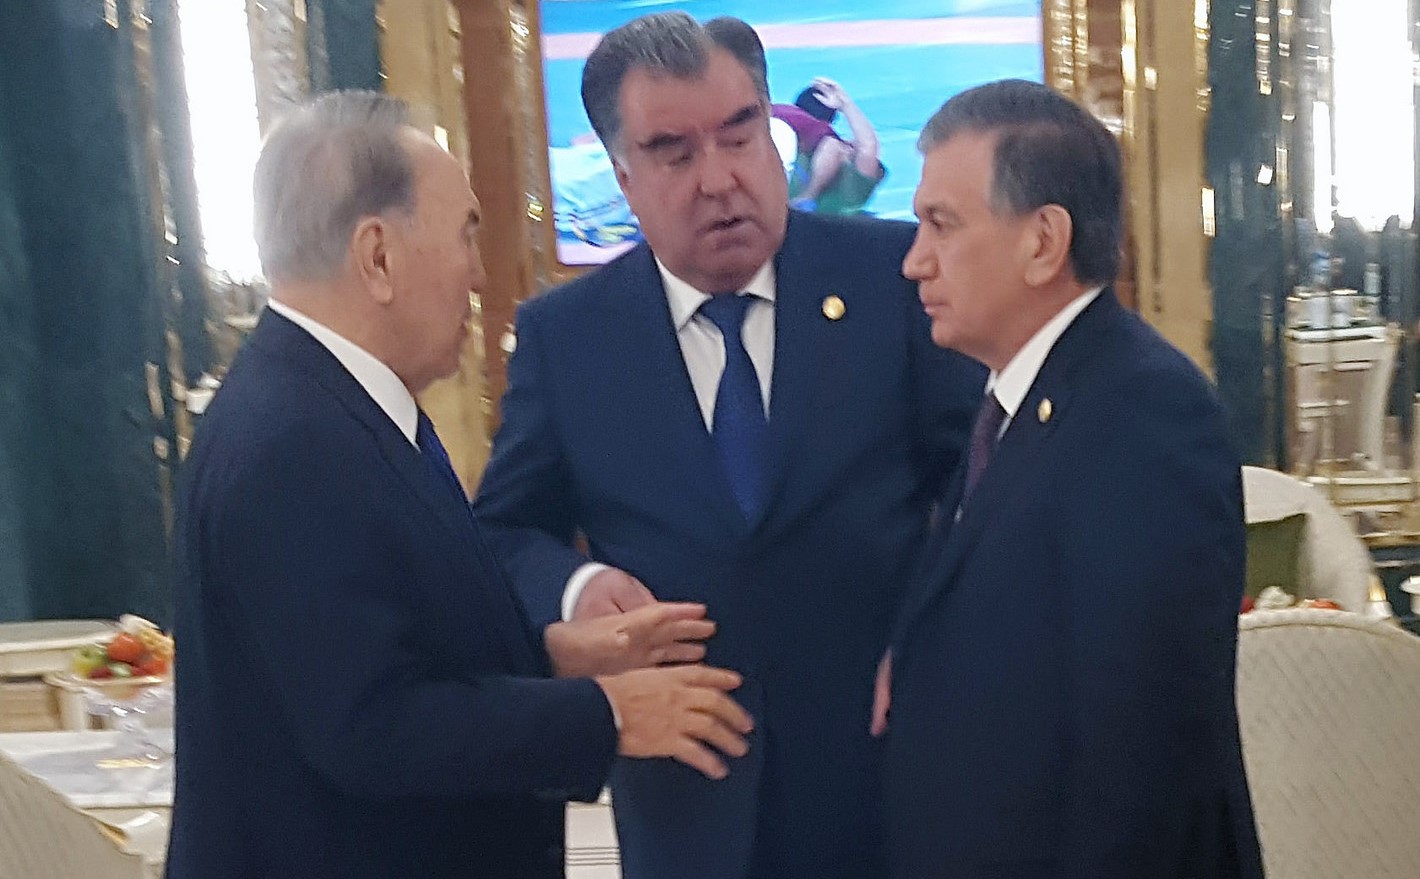 Эмомали Рахмон в Ашхабаде провел встречу с Мирзиёевым и Назарбаевым. Затем отбыл в Нью-Йорк